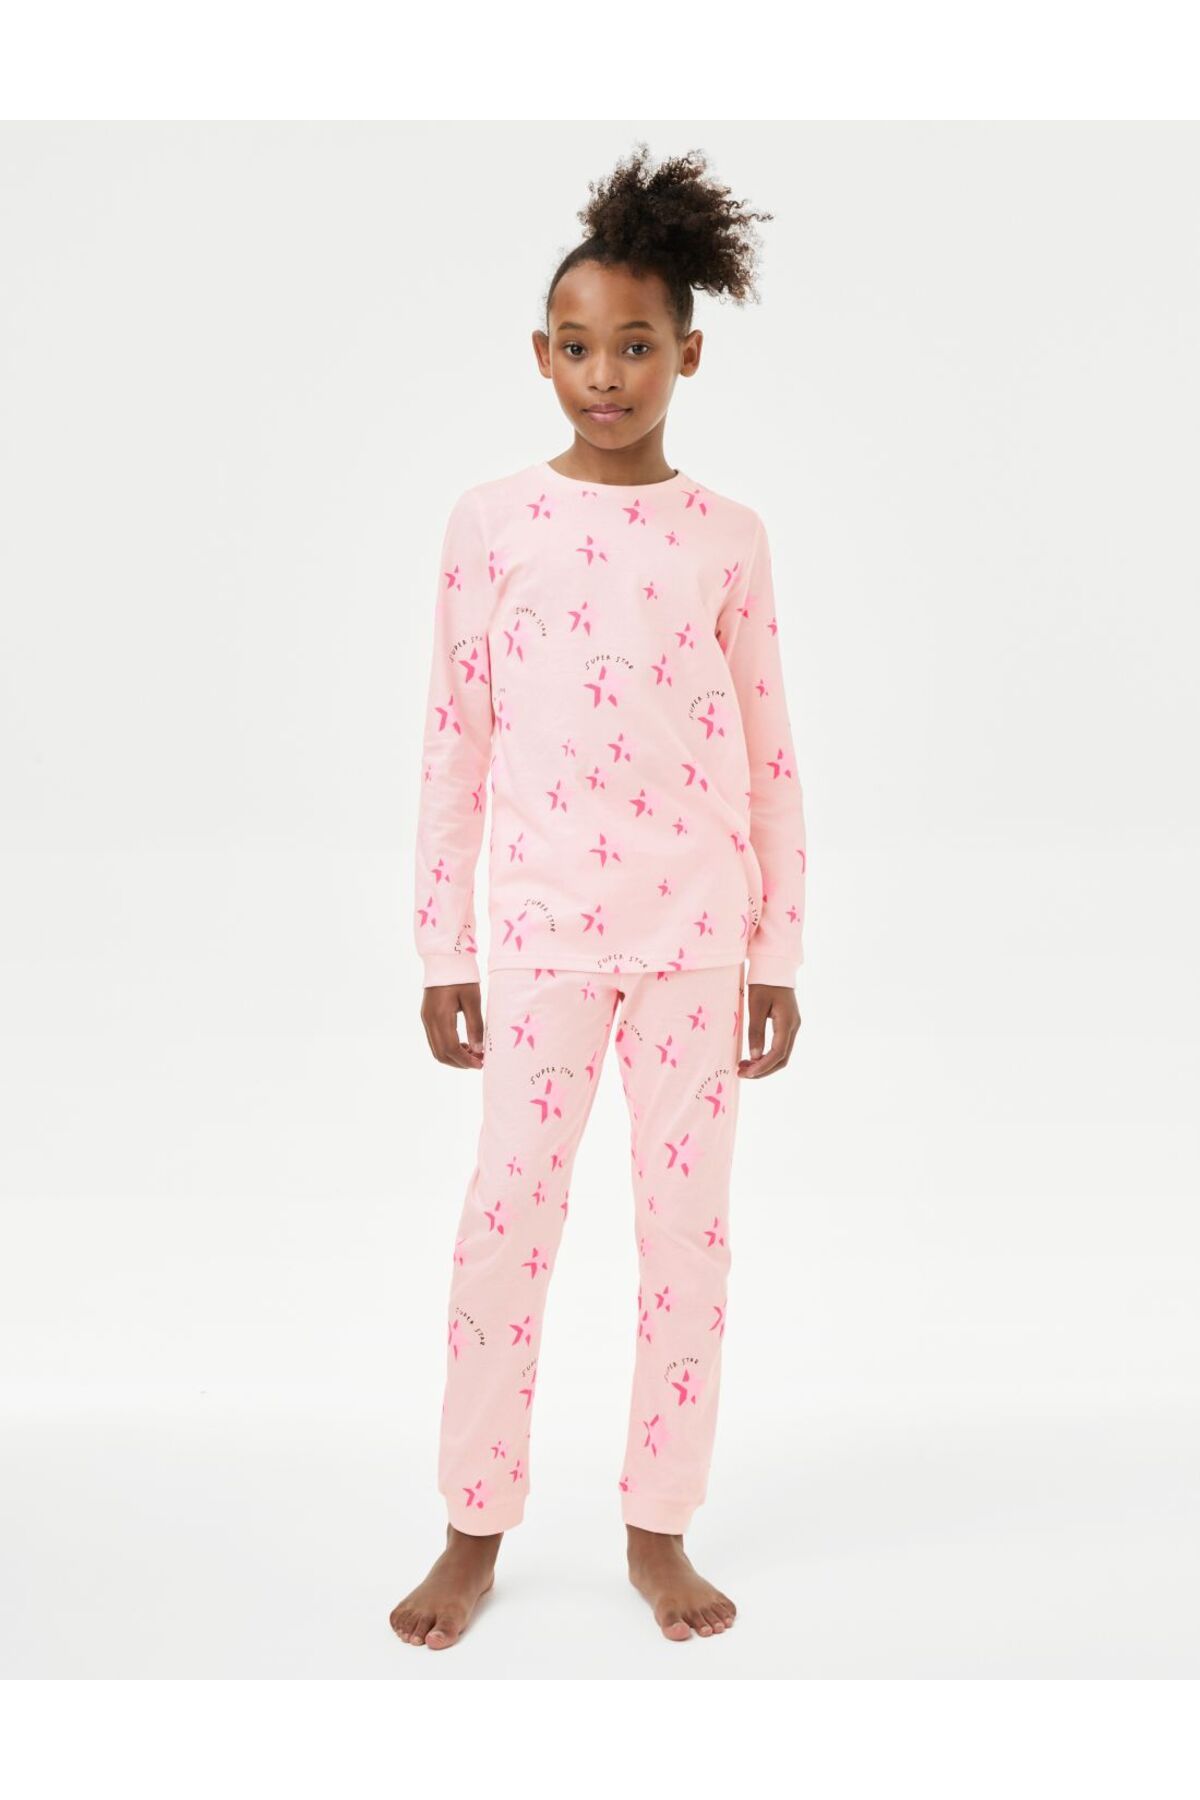 Marks & Spencer Saf Pamuklu Yıldız Desenli Pijama Takımı (7-14 Yaş)